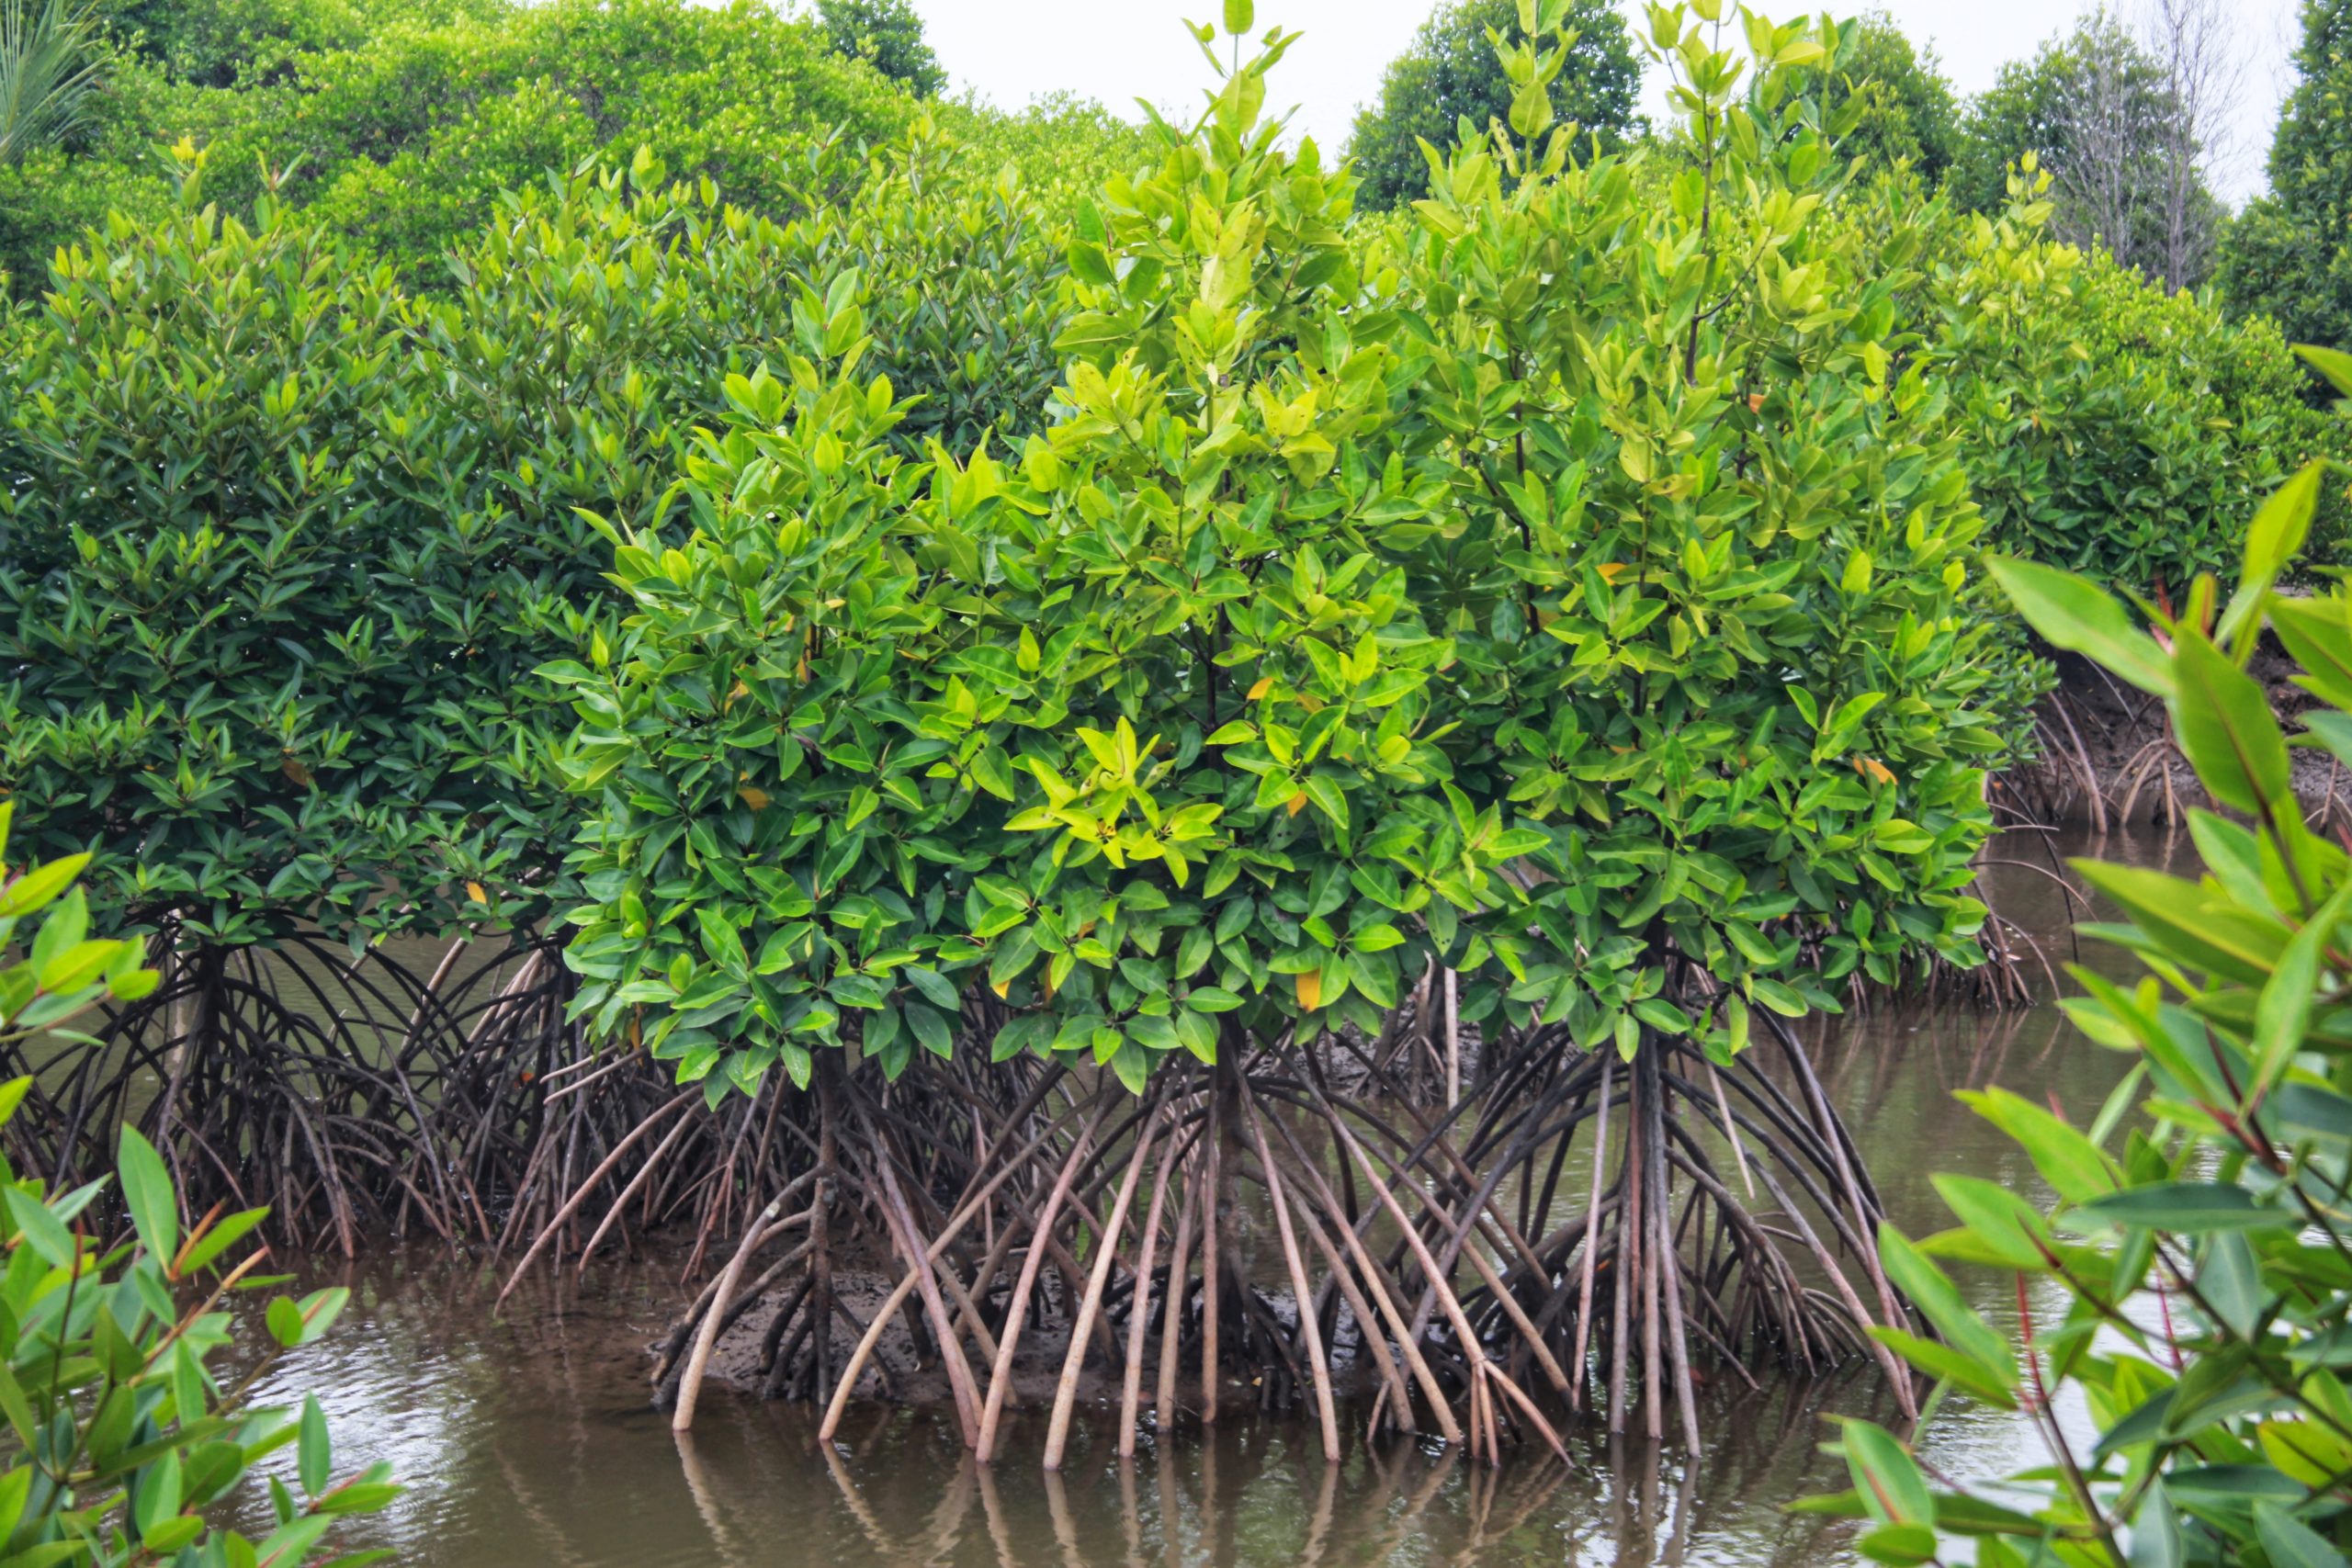 Rehabilitasi mangrove mulai dilakukan kelompok tani yang diketuai Samsul. Bibit-bibit mangrove kecil itu, perlahan mulai tumbuh besar dan kuat. Foto: Ayat S Karokaro/ Mongabay Indonesia